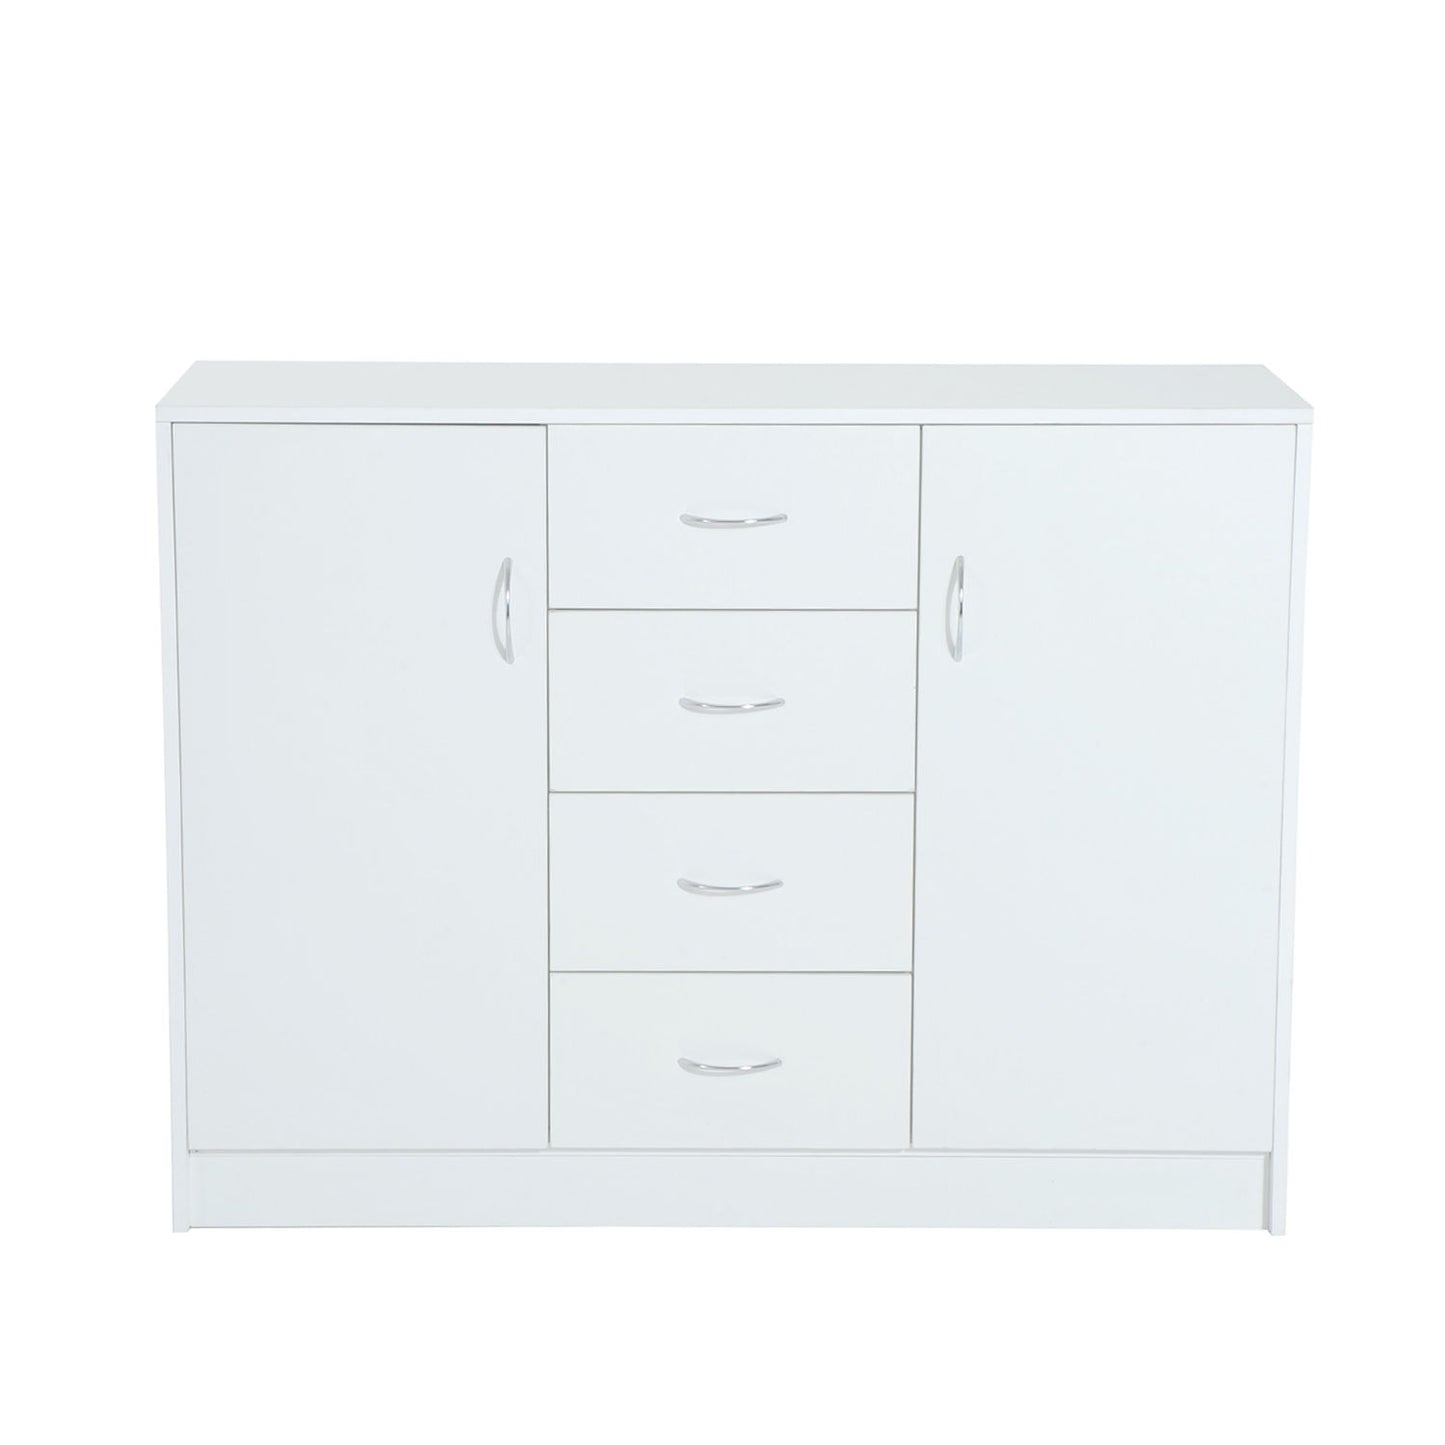 HOMCOM 120Wx40Dx90H cm Drawer Cabinet-White